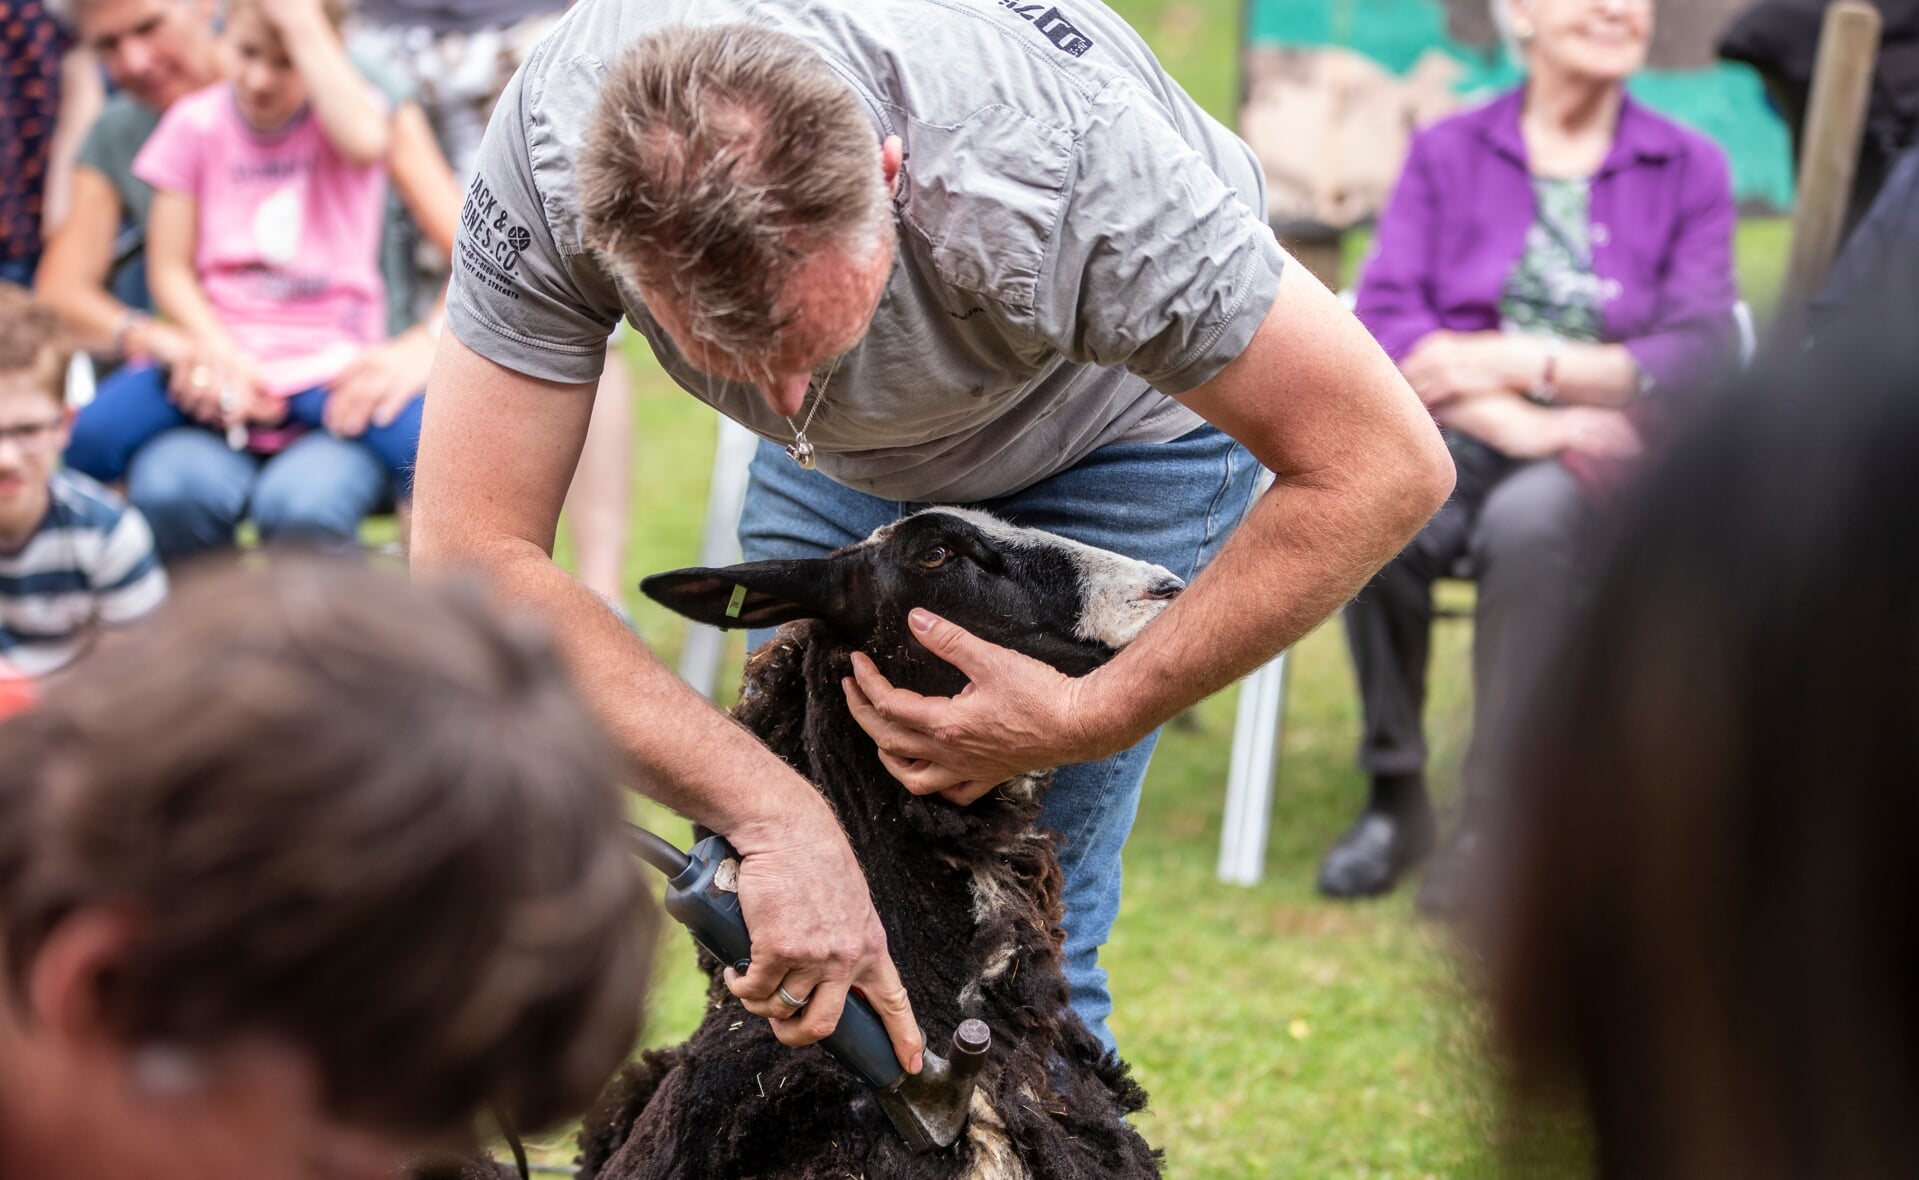 De schapenscheerder demonstreerde zijn vak op de Kinderboerderij aan het Apollopad.